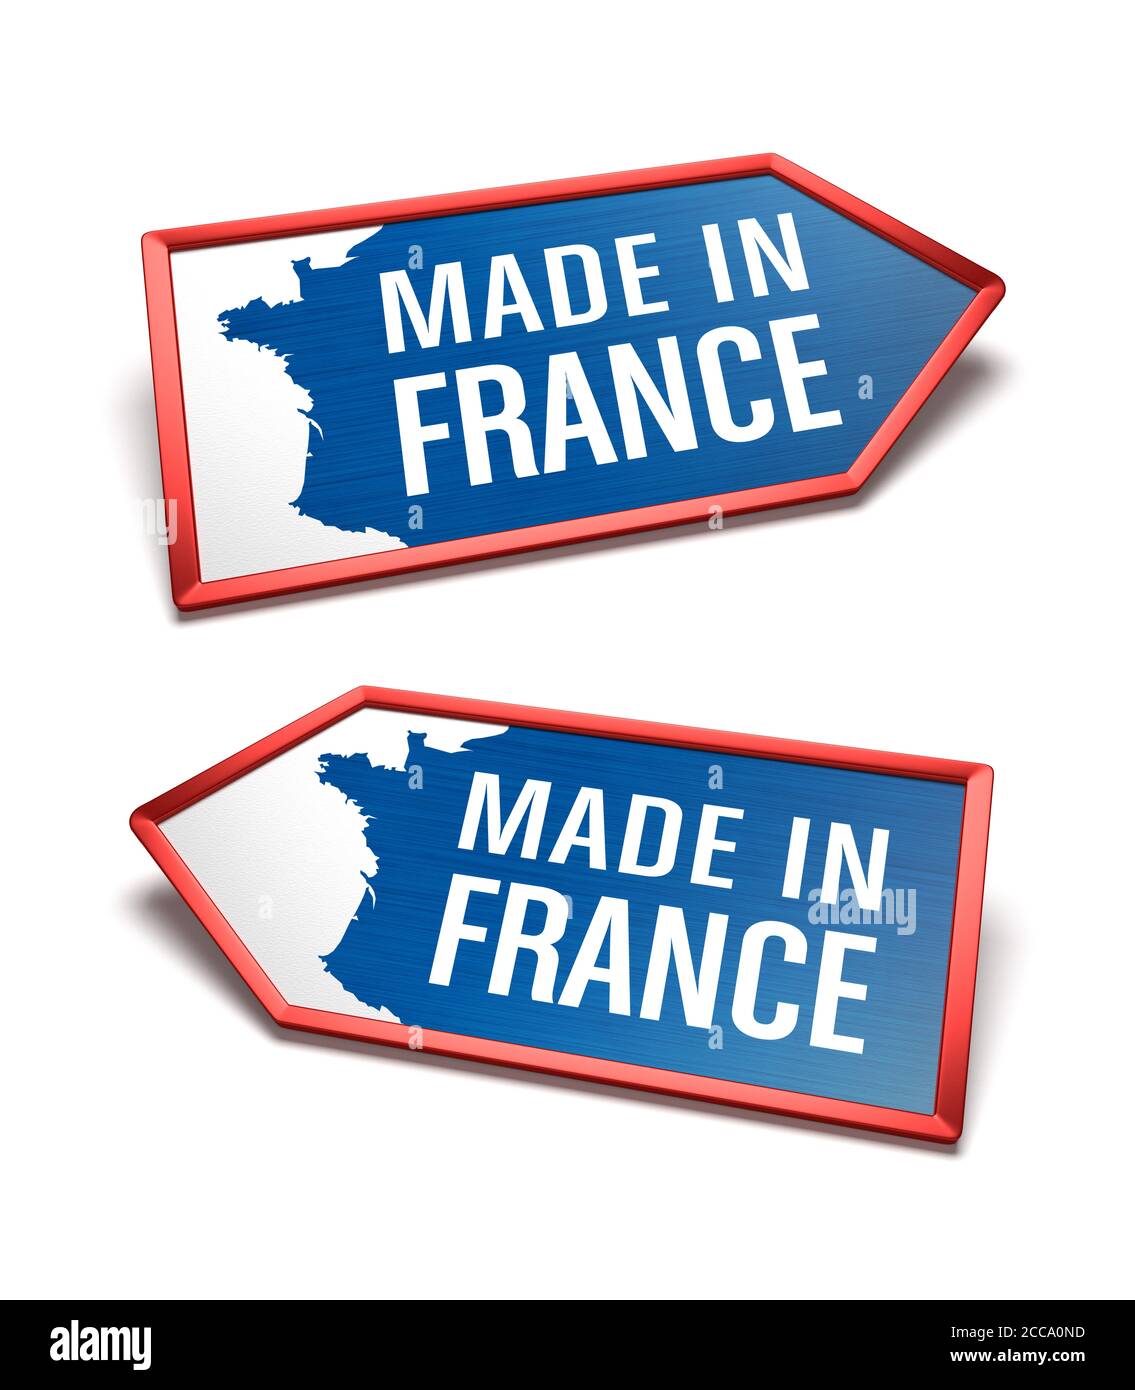 Fabriqué en France - étiquettes bleues, blanches et bleues avec une carte de France. Certificat français à l'intérieur des formes d'icône en forme de flèche, pointant vers la gauche et la droite. Banque D'Images